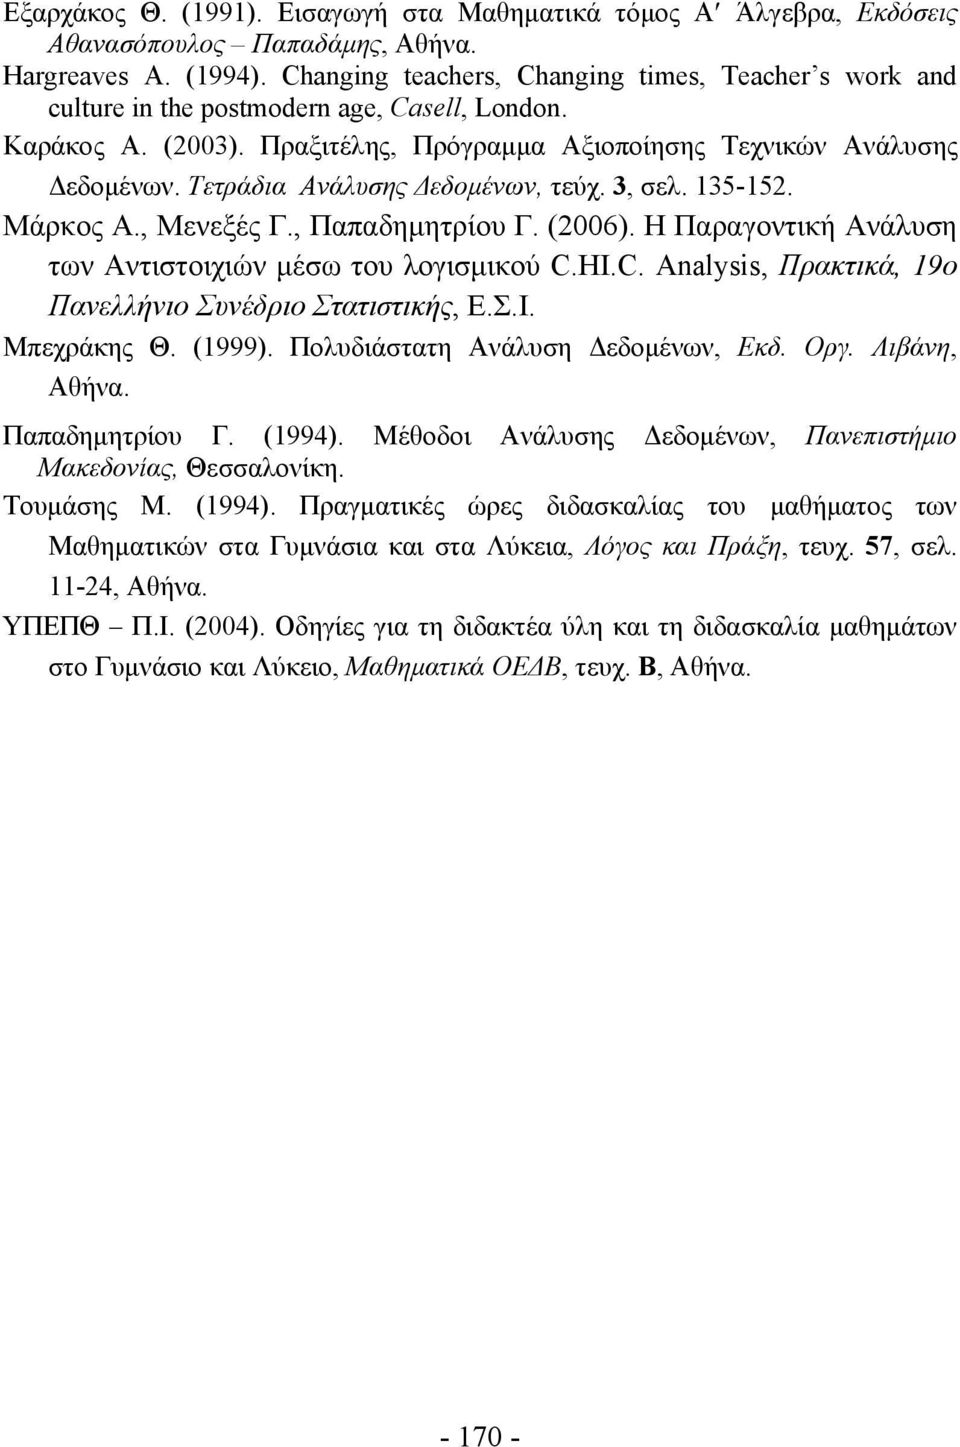 Τετράδια Ανάλυσης Δεδομένων, τεύχ. 3, σελ. 135-152. Μάρκος Α., Μενεξές Γ., Παπαδημητρίου Γ. (2006). Η Παραγοντική Ανάλυση των Αντιστοιχιών μέσω του λογισμικού C.